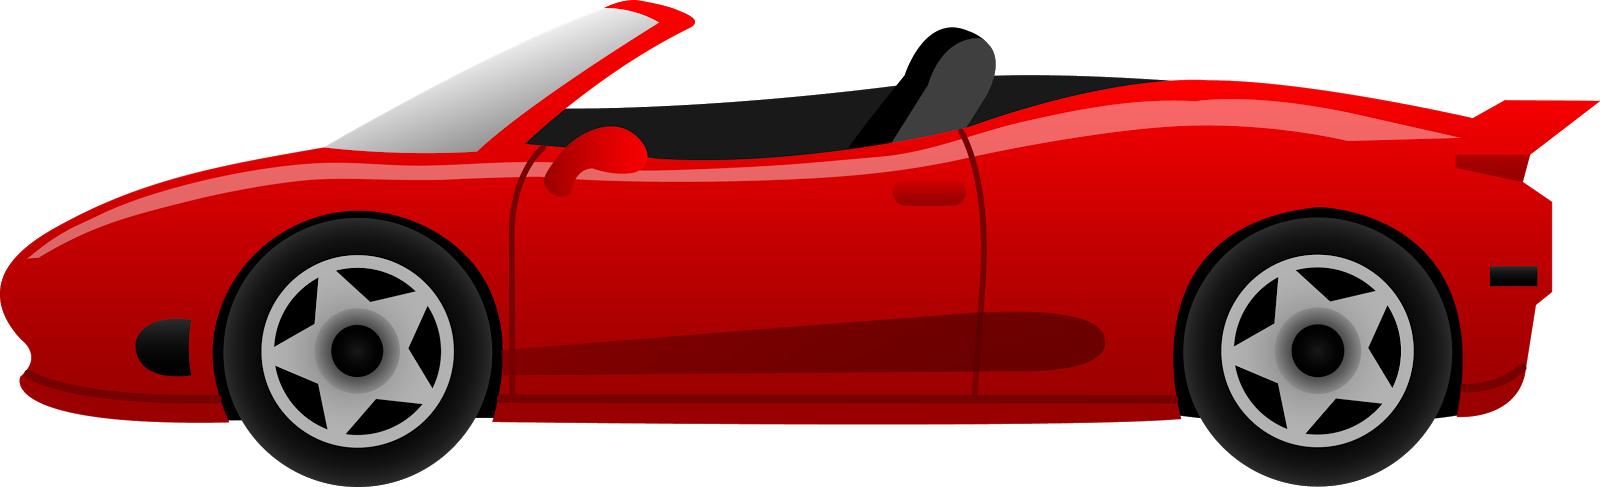 Cars 2 Clip Art - Cartoon Car Side View (1600x487)